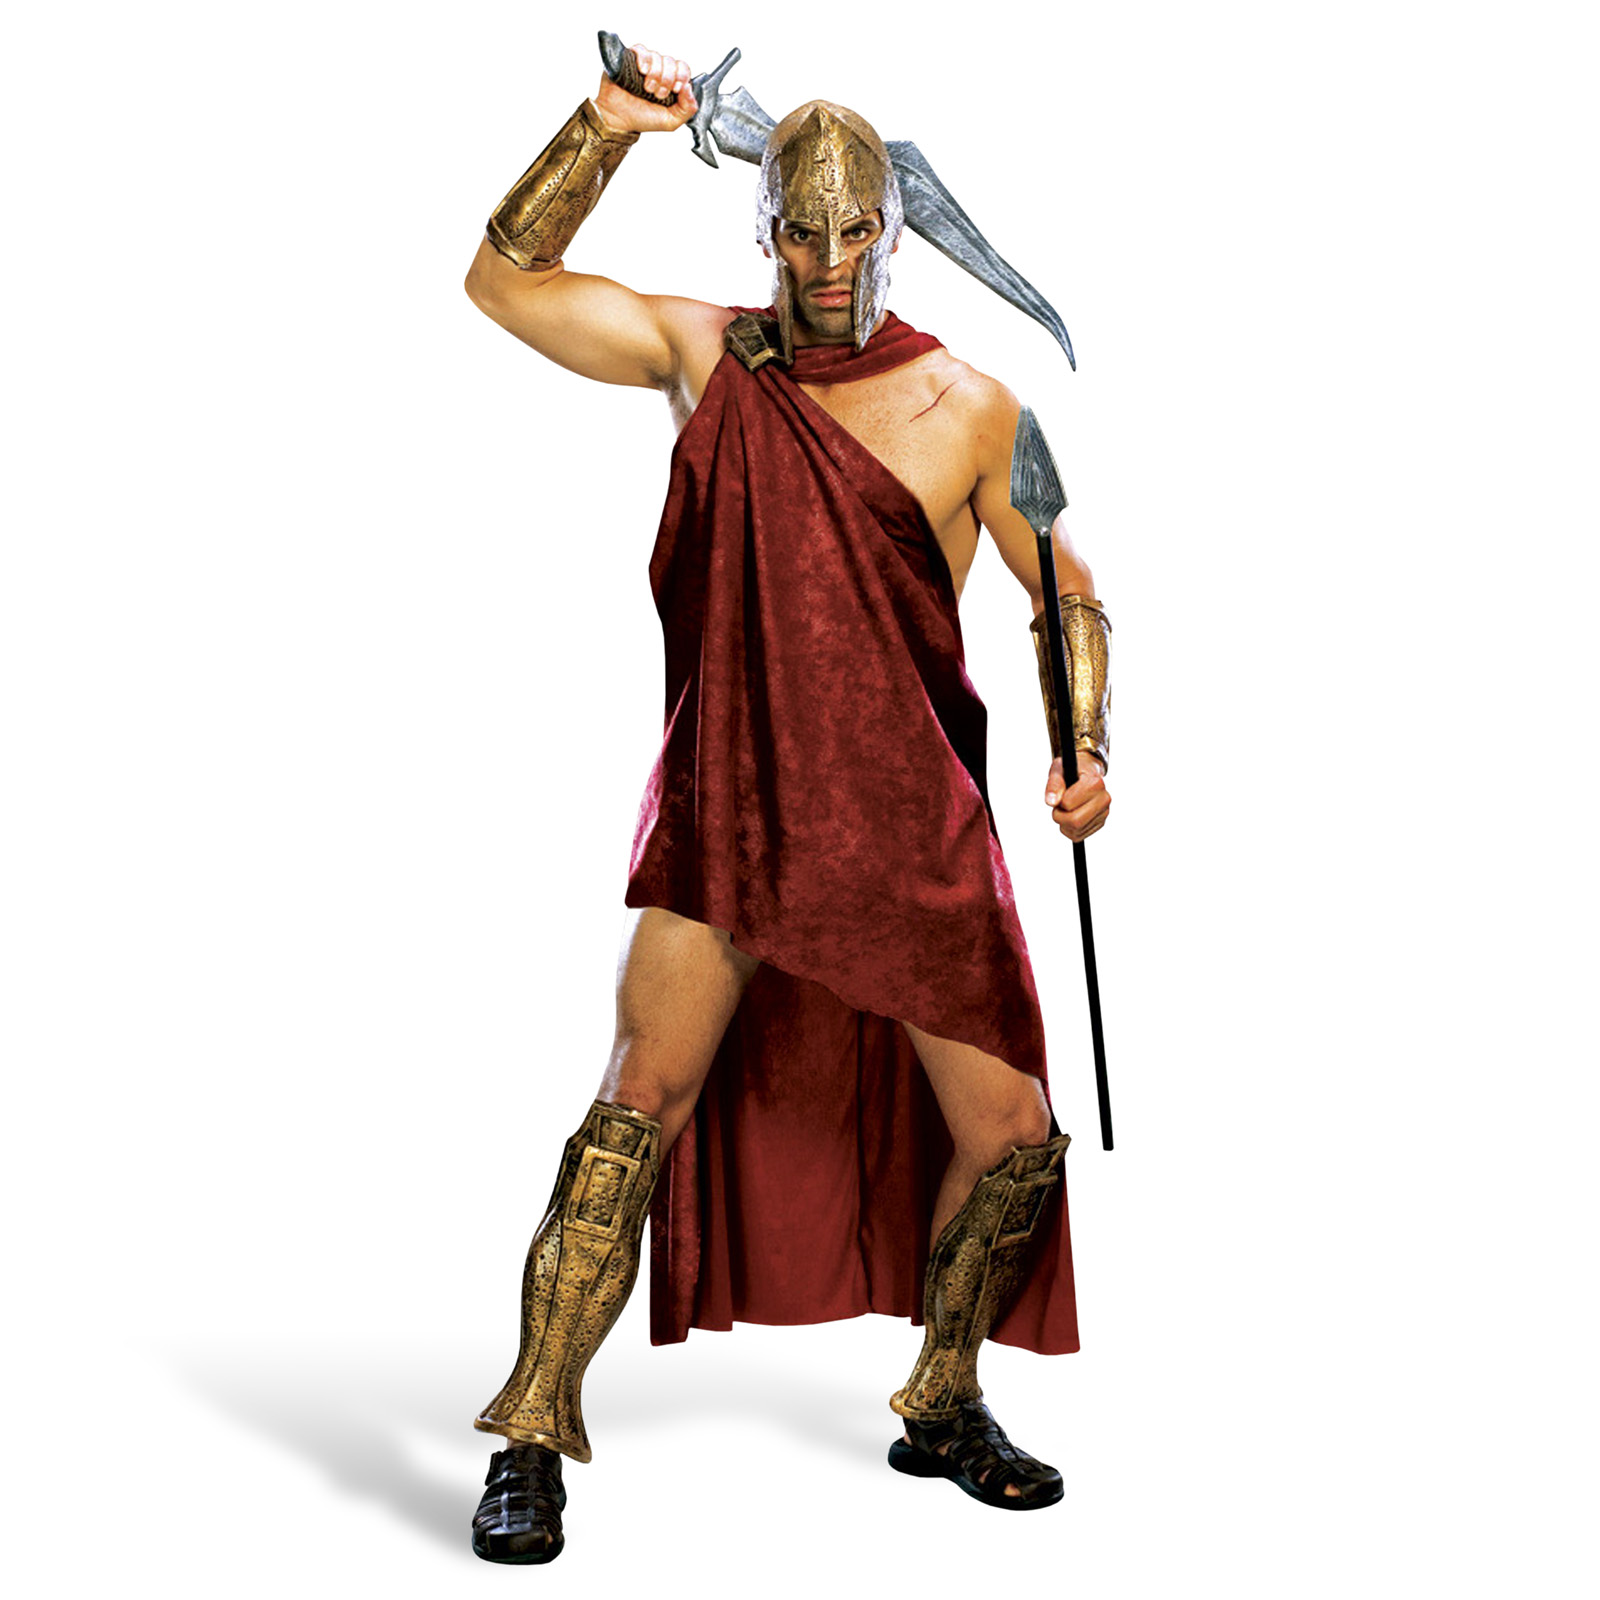 300 - Spartan Deluxe Costume